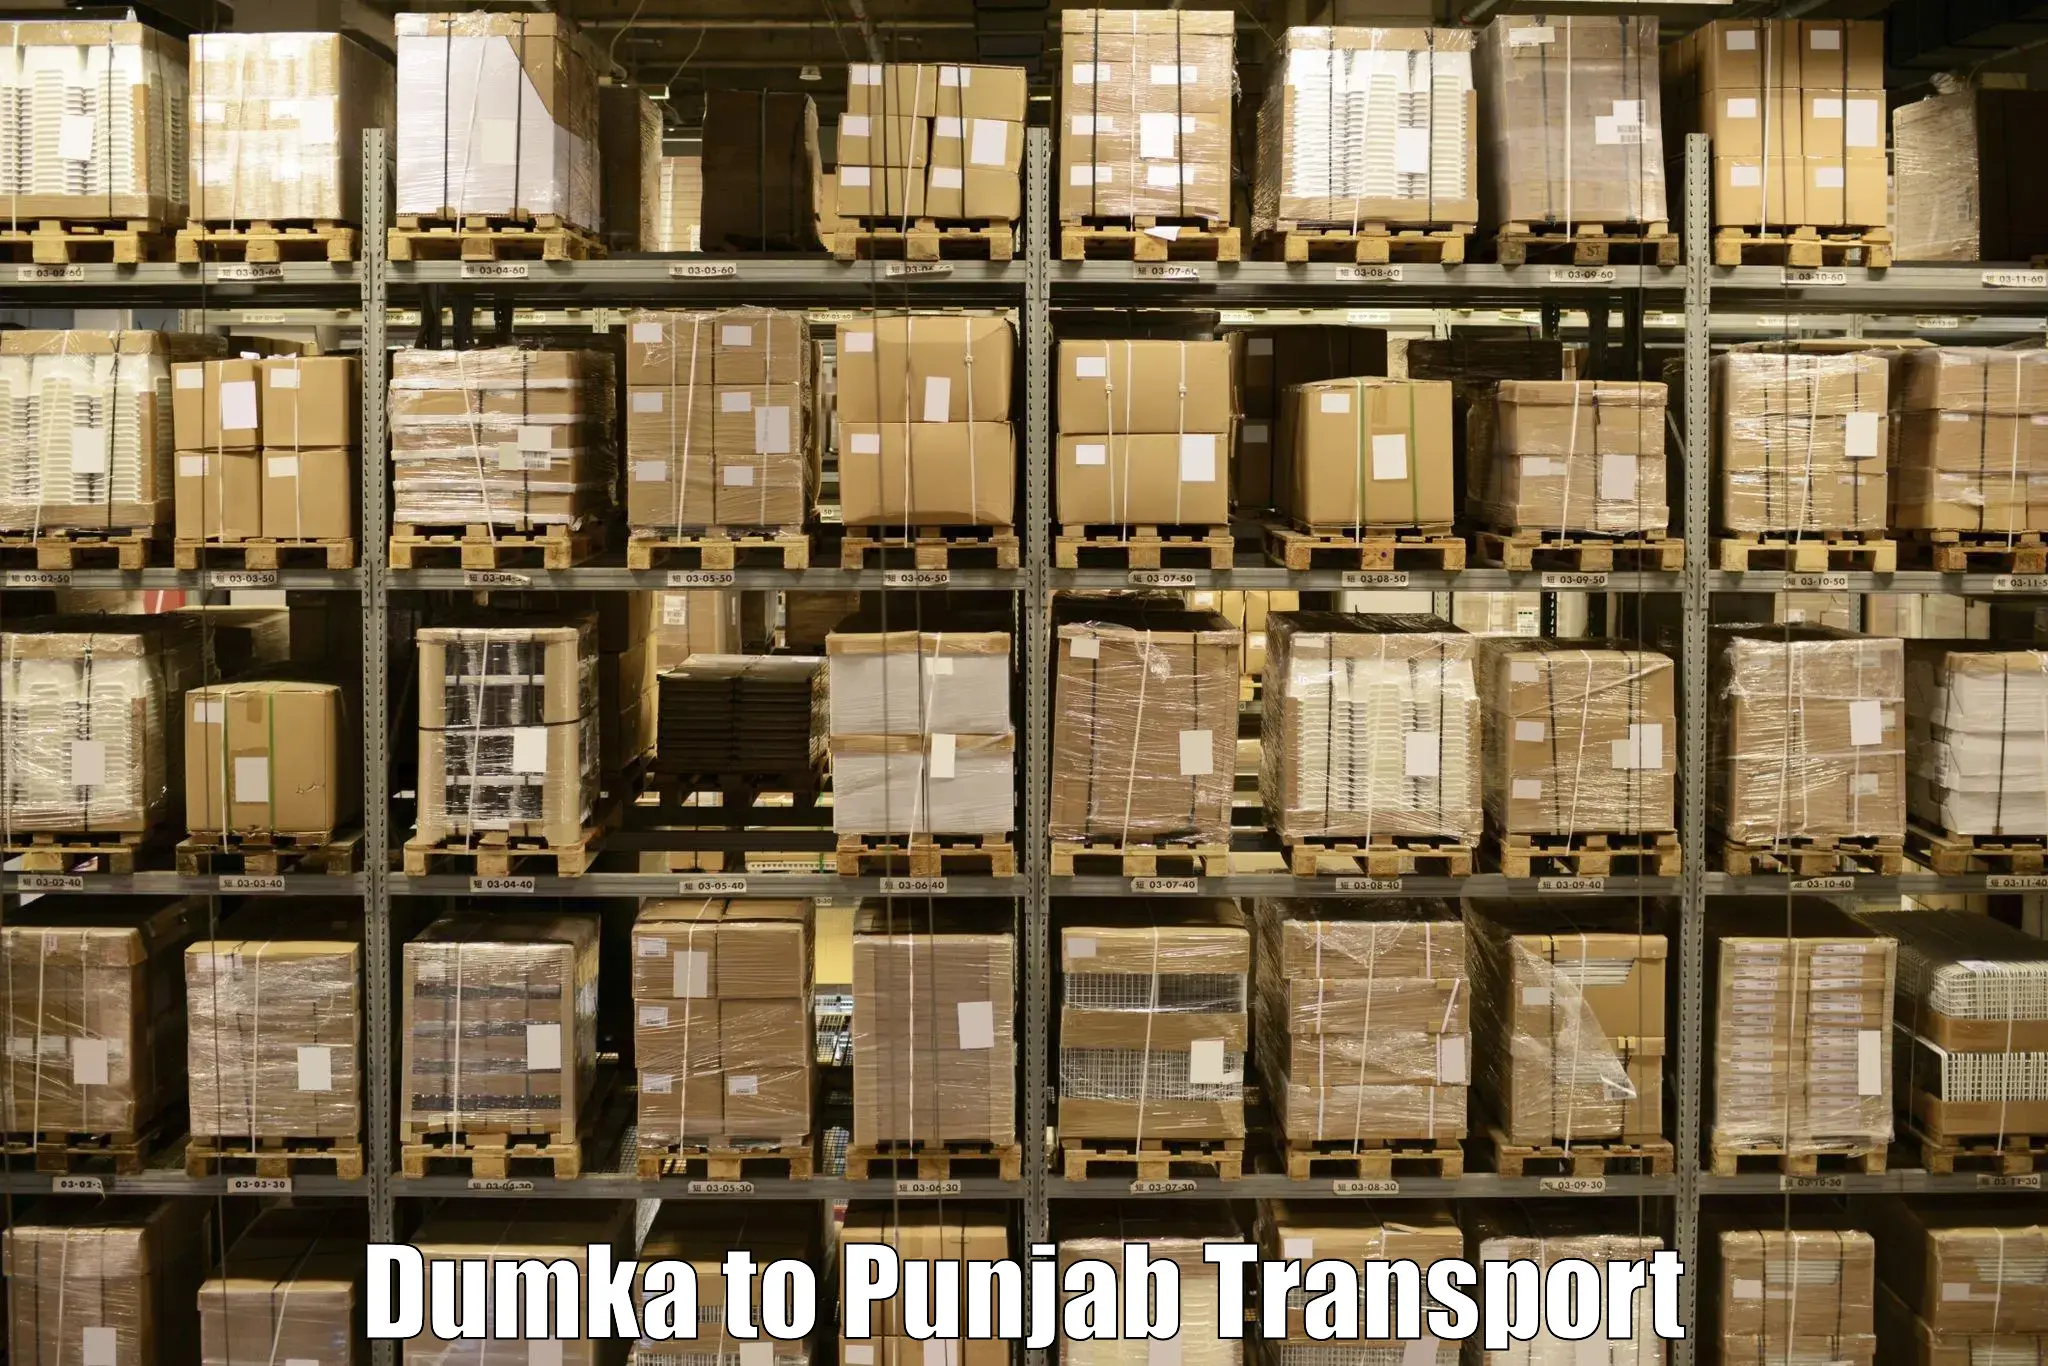 Daily transport service Dumka to Patiala